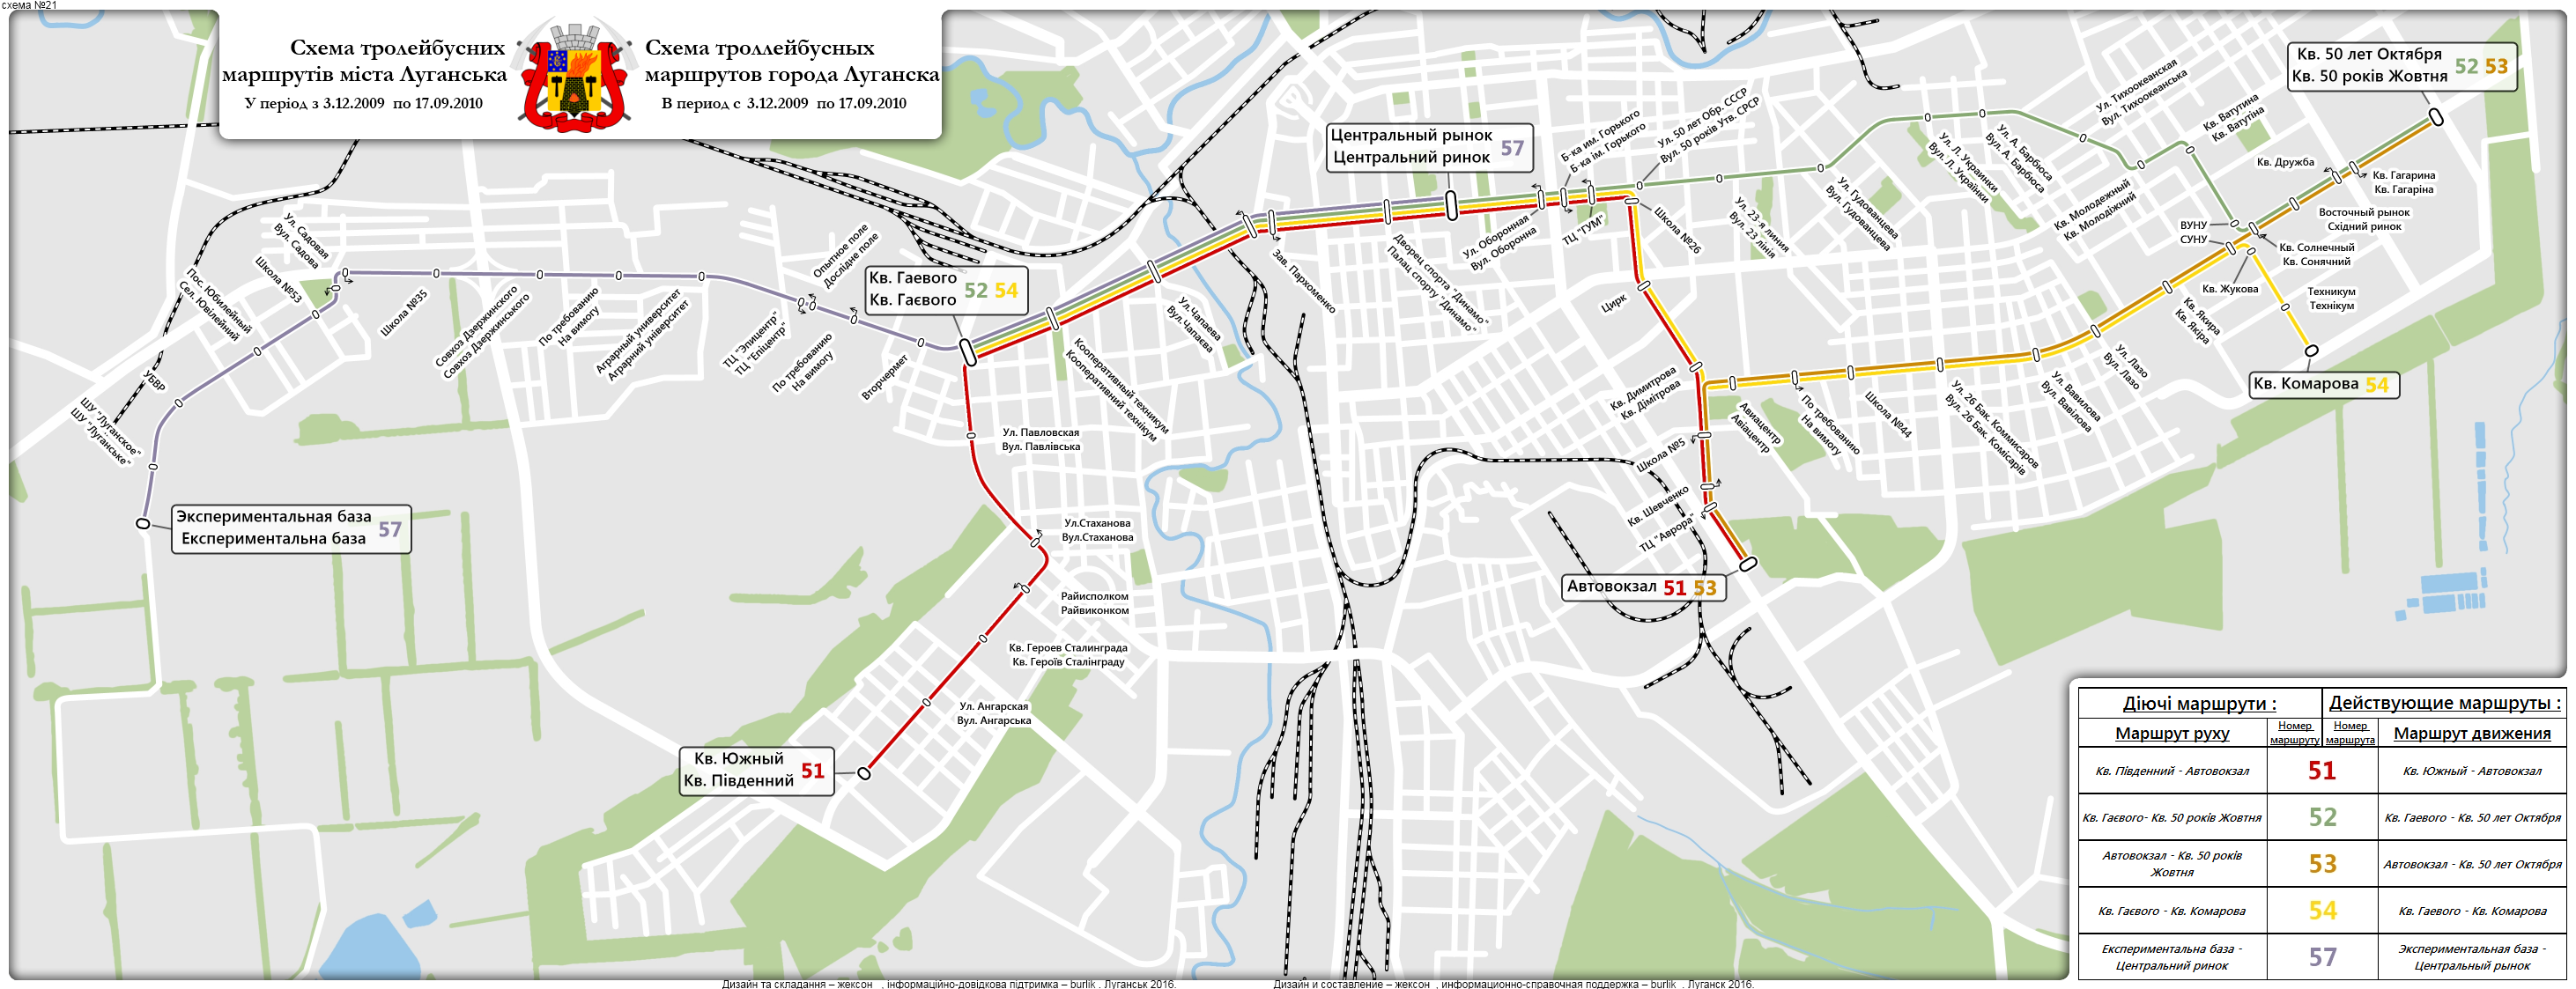 Троллейбус 13 маршрут на карте. Схема маршрутов Луганска. Схема троллейбуса. Маршруты по Луганску. Луганск трамвай схема.